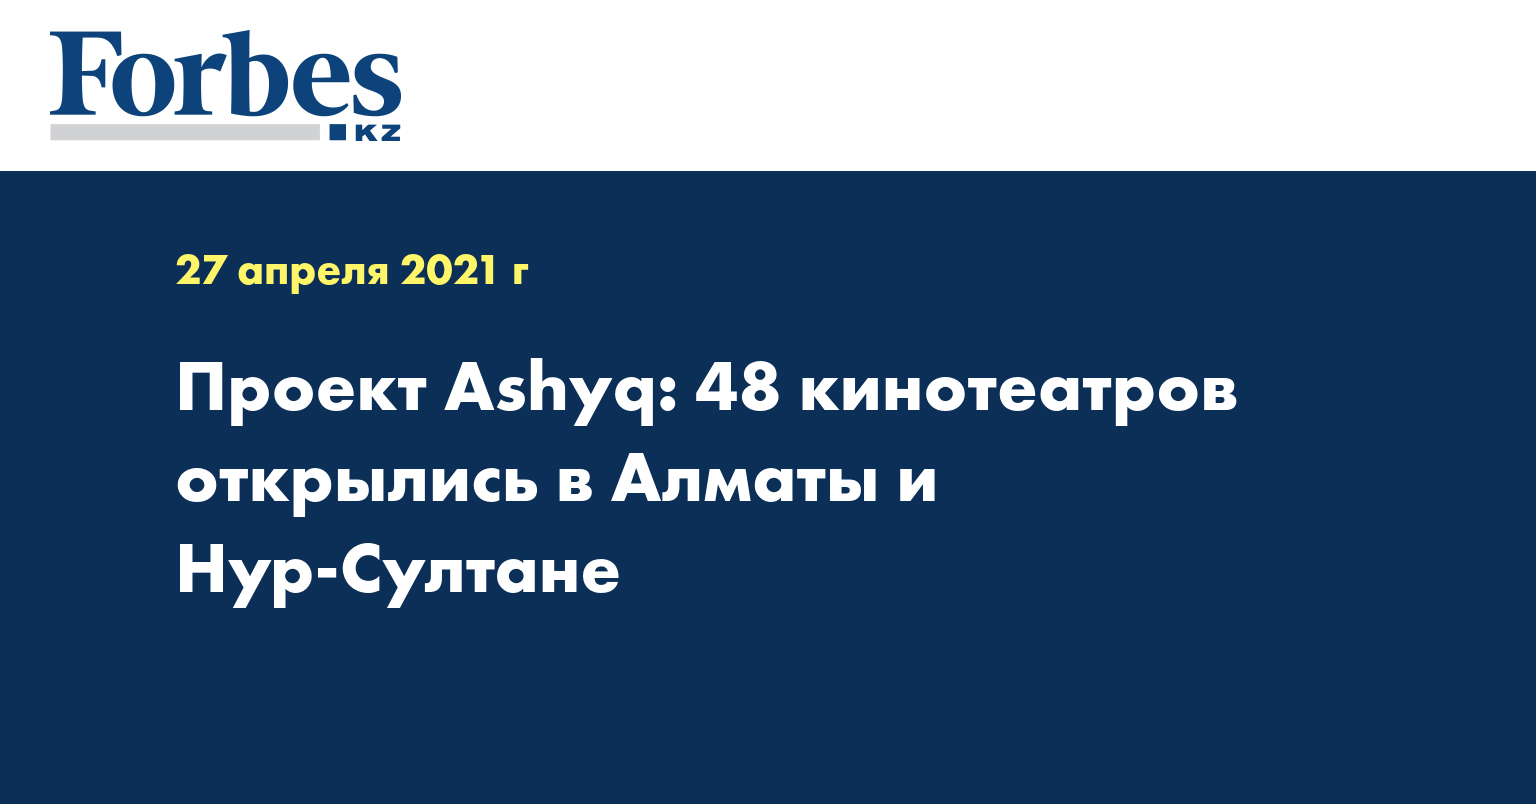 Проект Ashyq: 48 кинотеатров открылись в Алматы и Нур-Султане